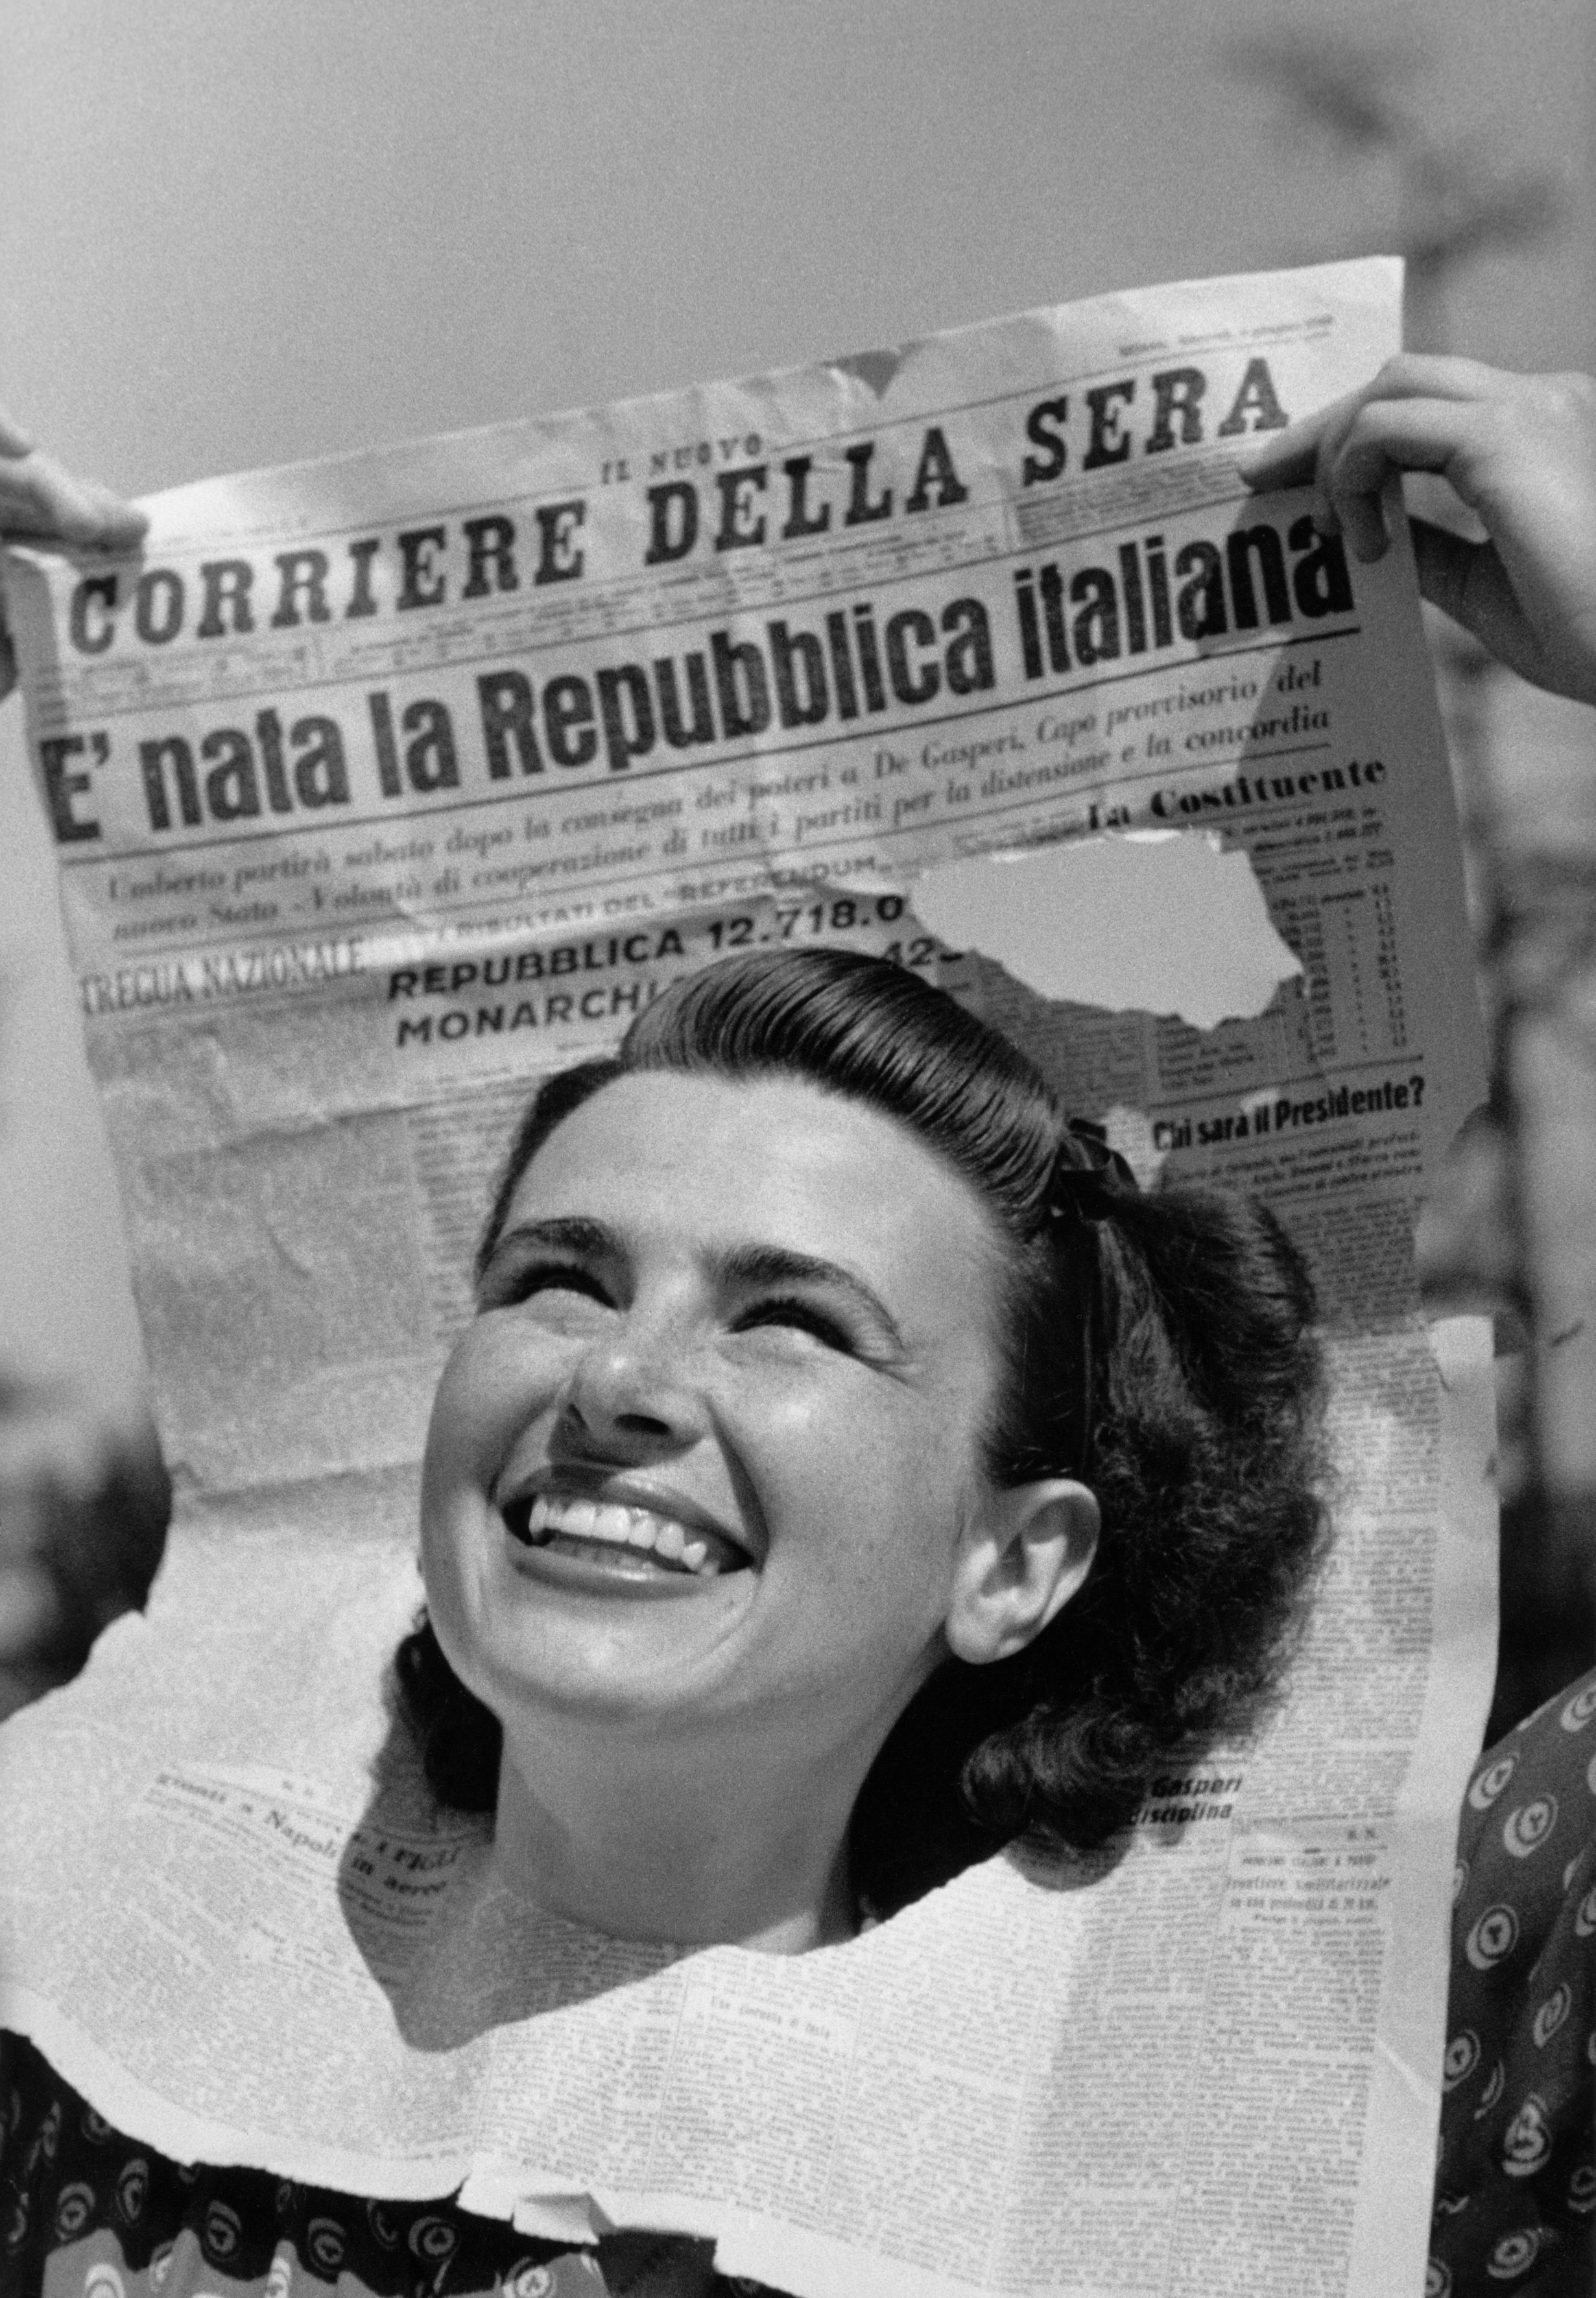 Federico Patellani, Immagine per la copertina di ""Tempo"" n. 22 del 15-22 giugno 1946", Milano, 1946